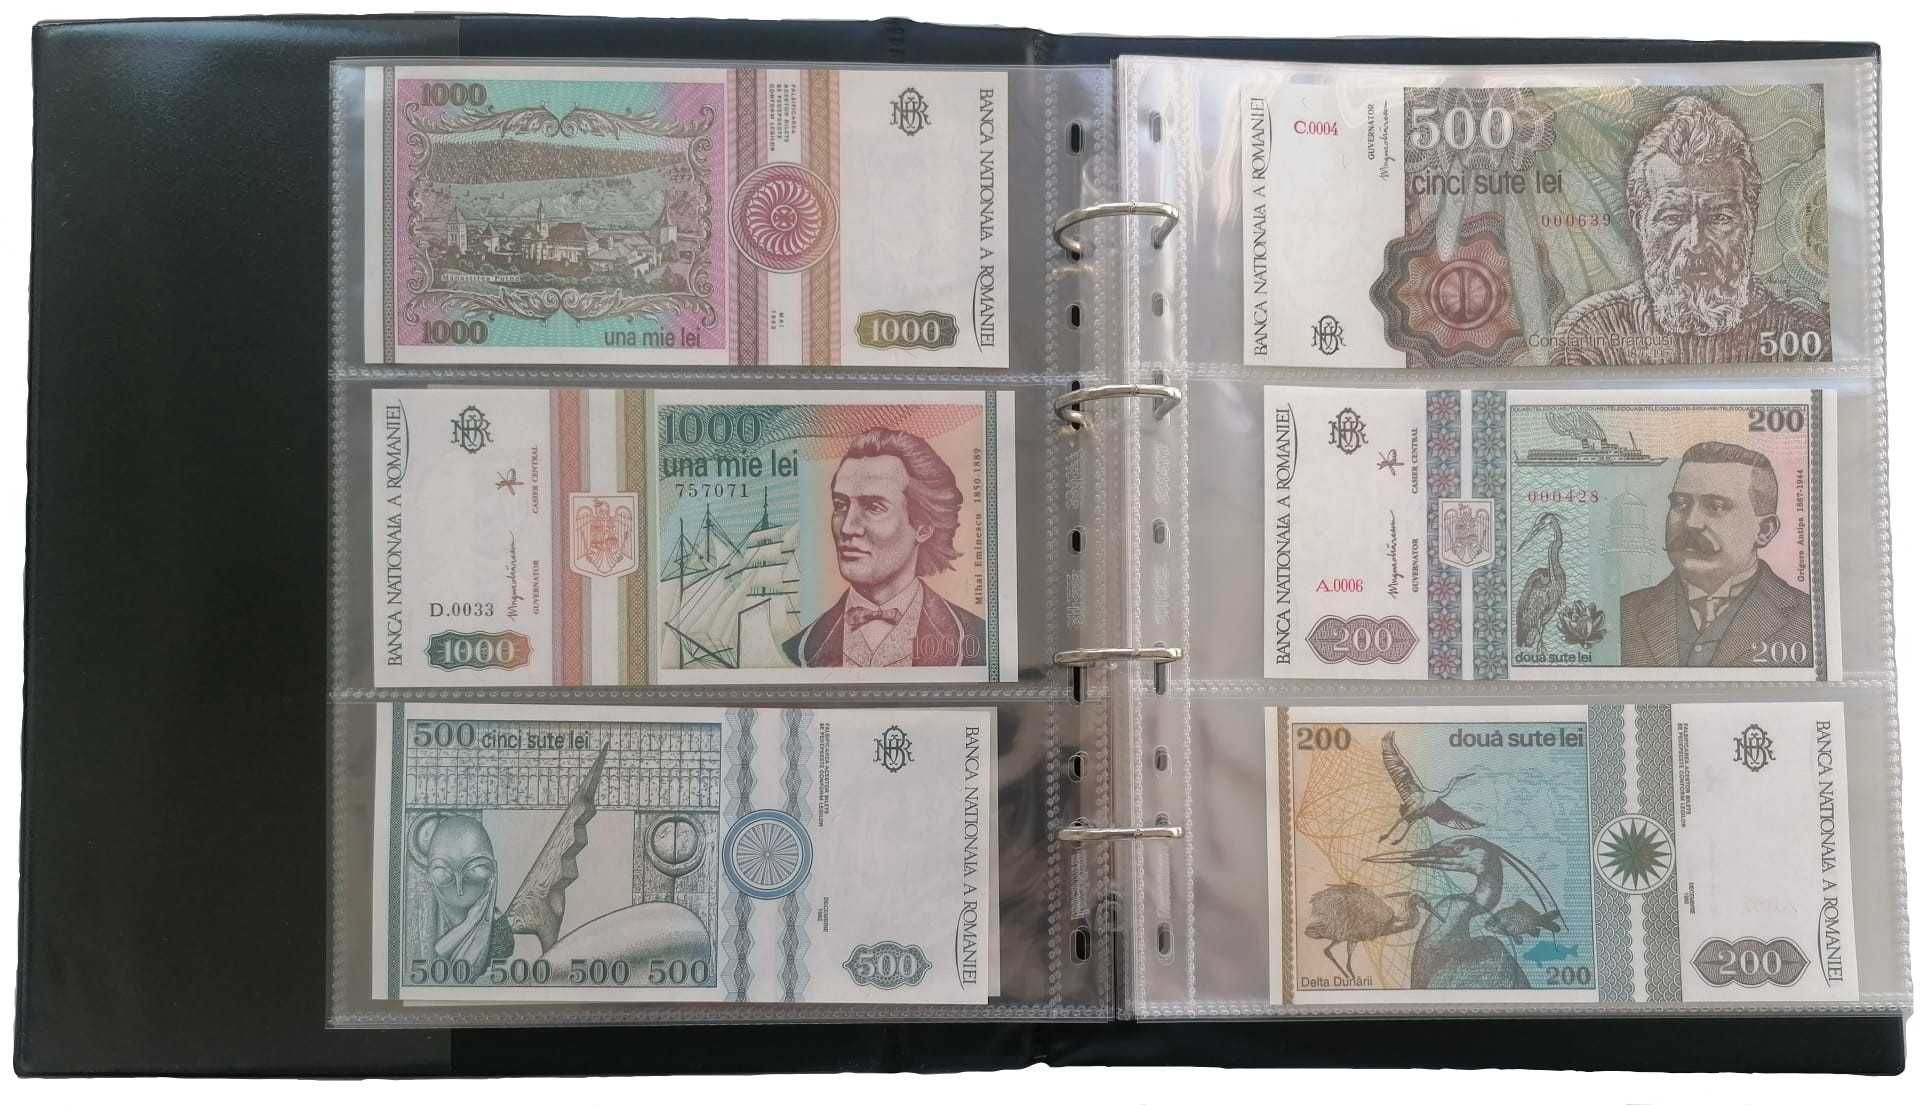 Album pentru bancnote prevazut cu 20 folii si 55 compartimente stocare